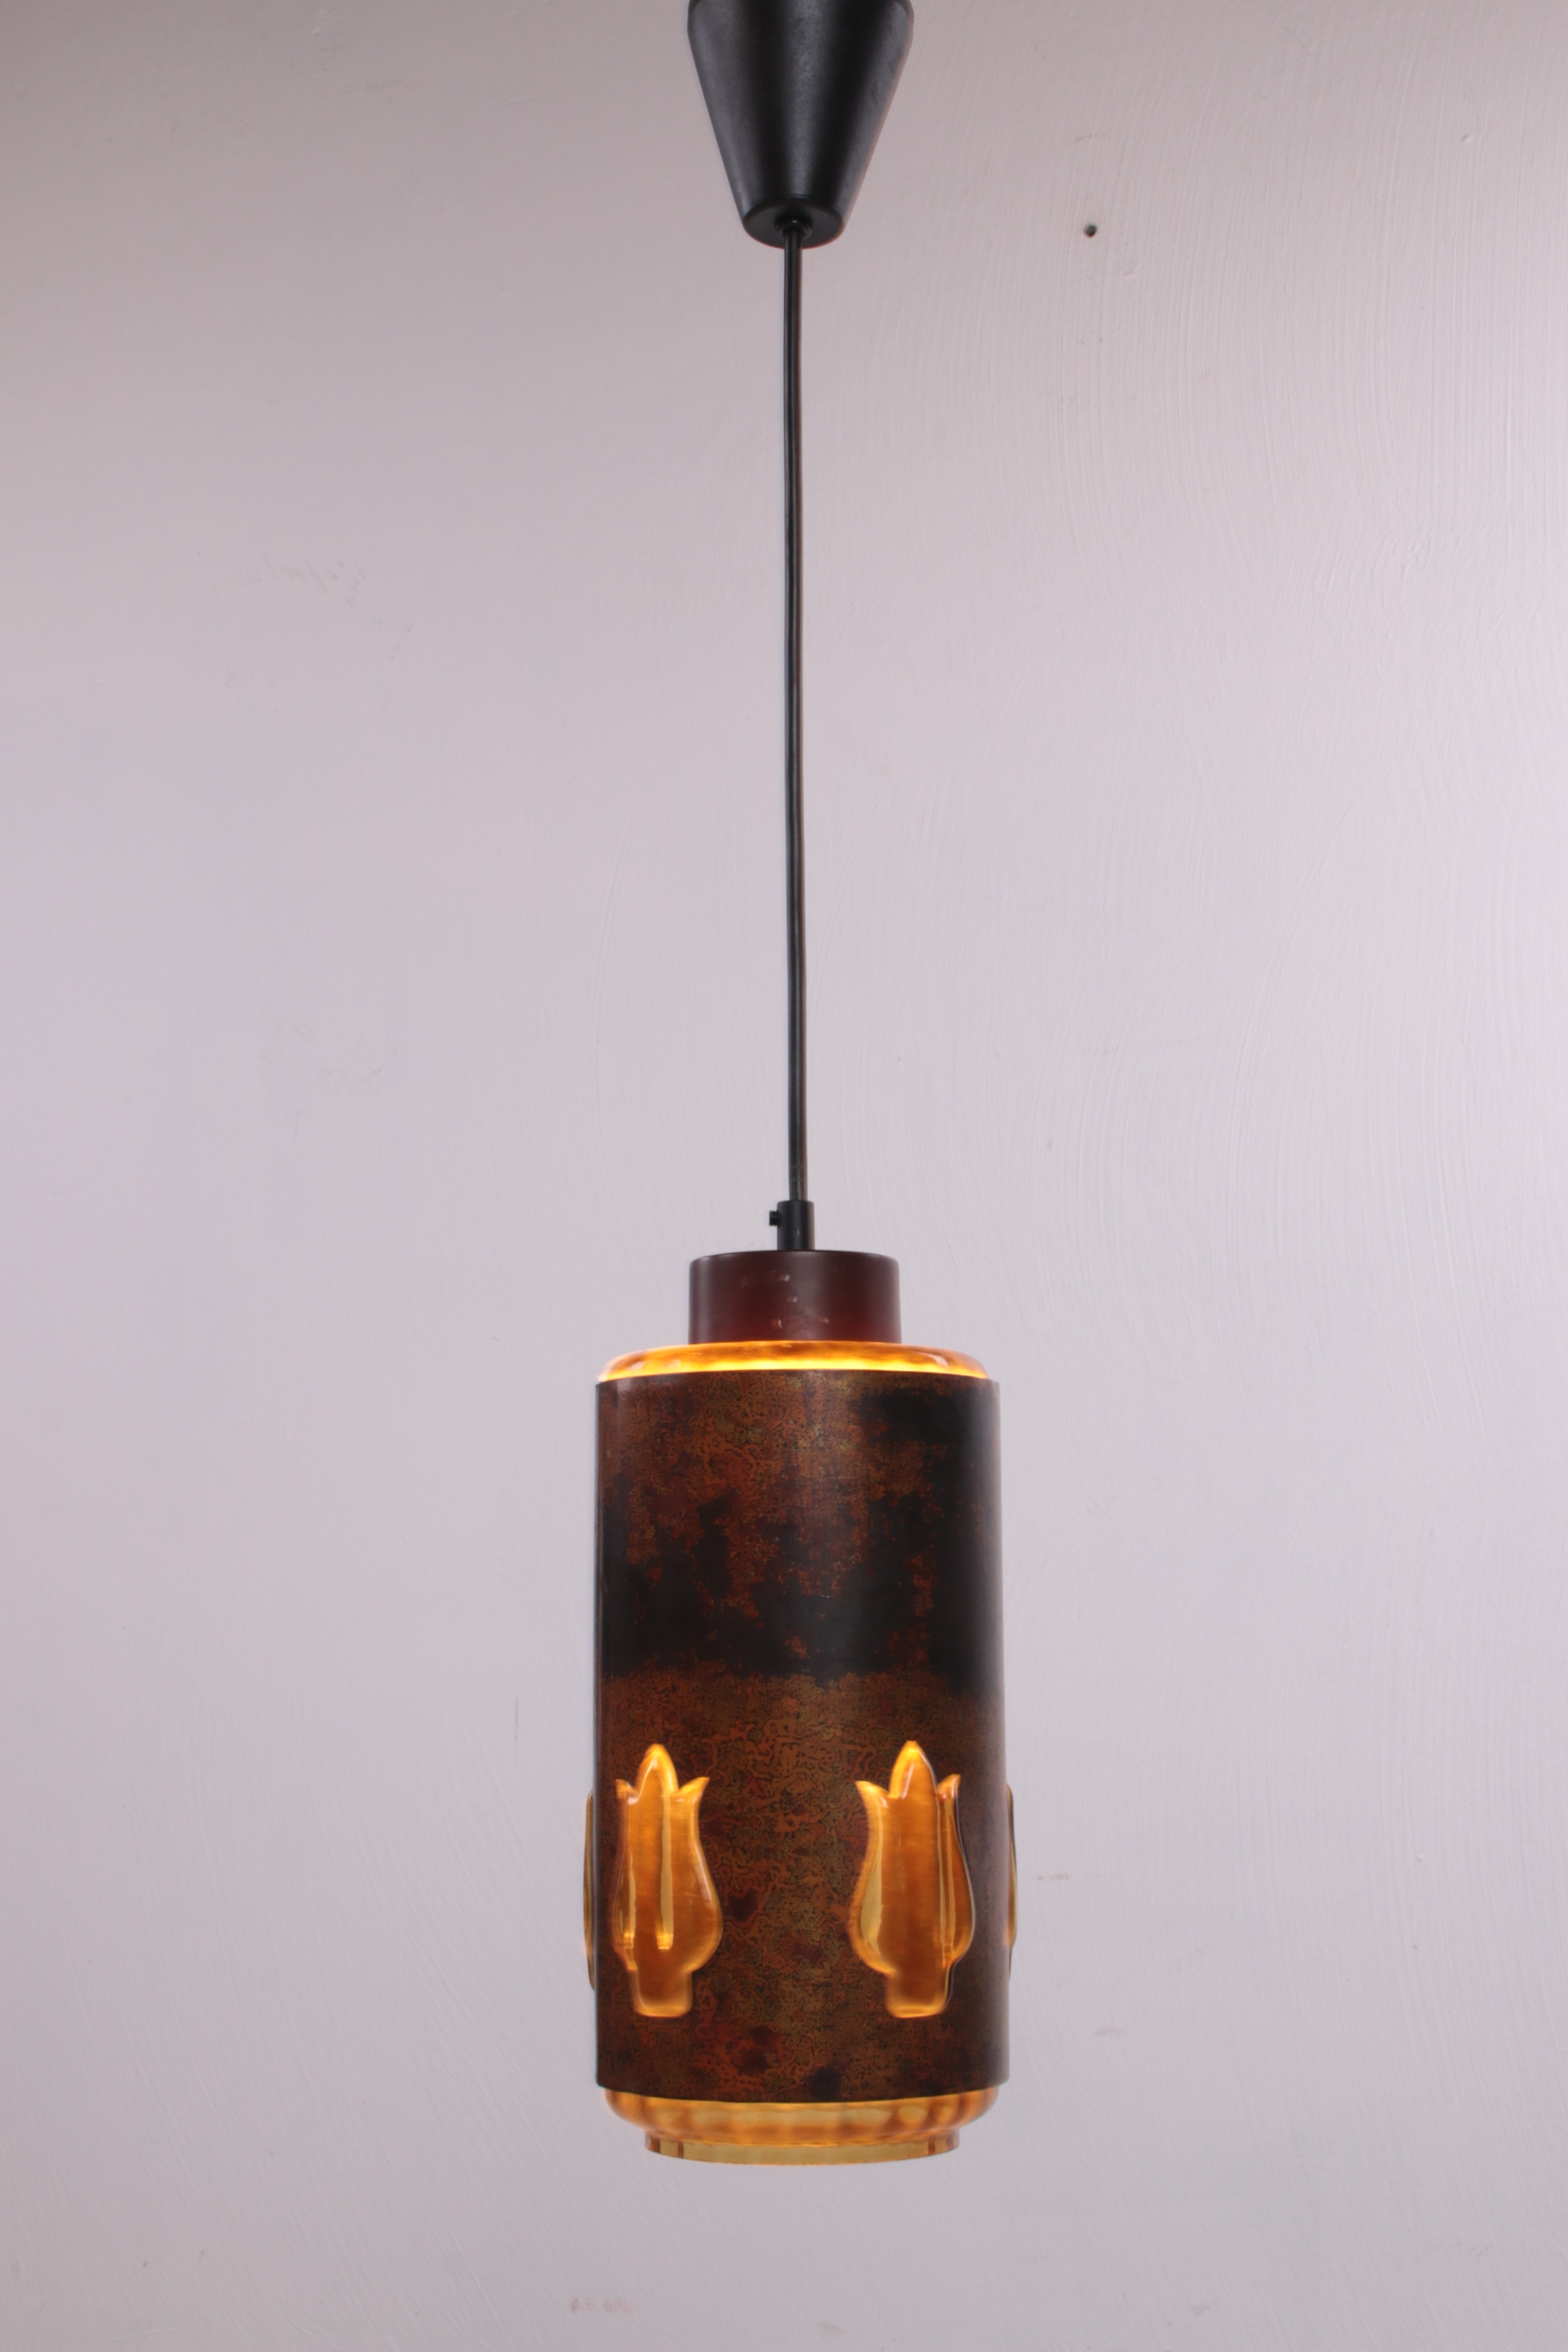 1960s Nanny Still Brutalist hanglamp gemaakt door raak voorkant licht aan